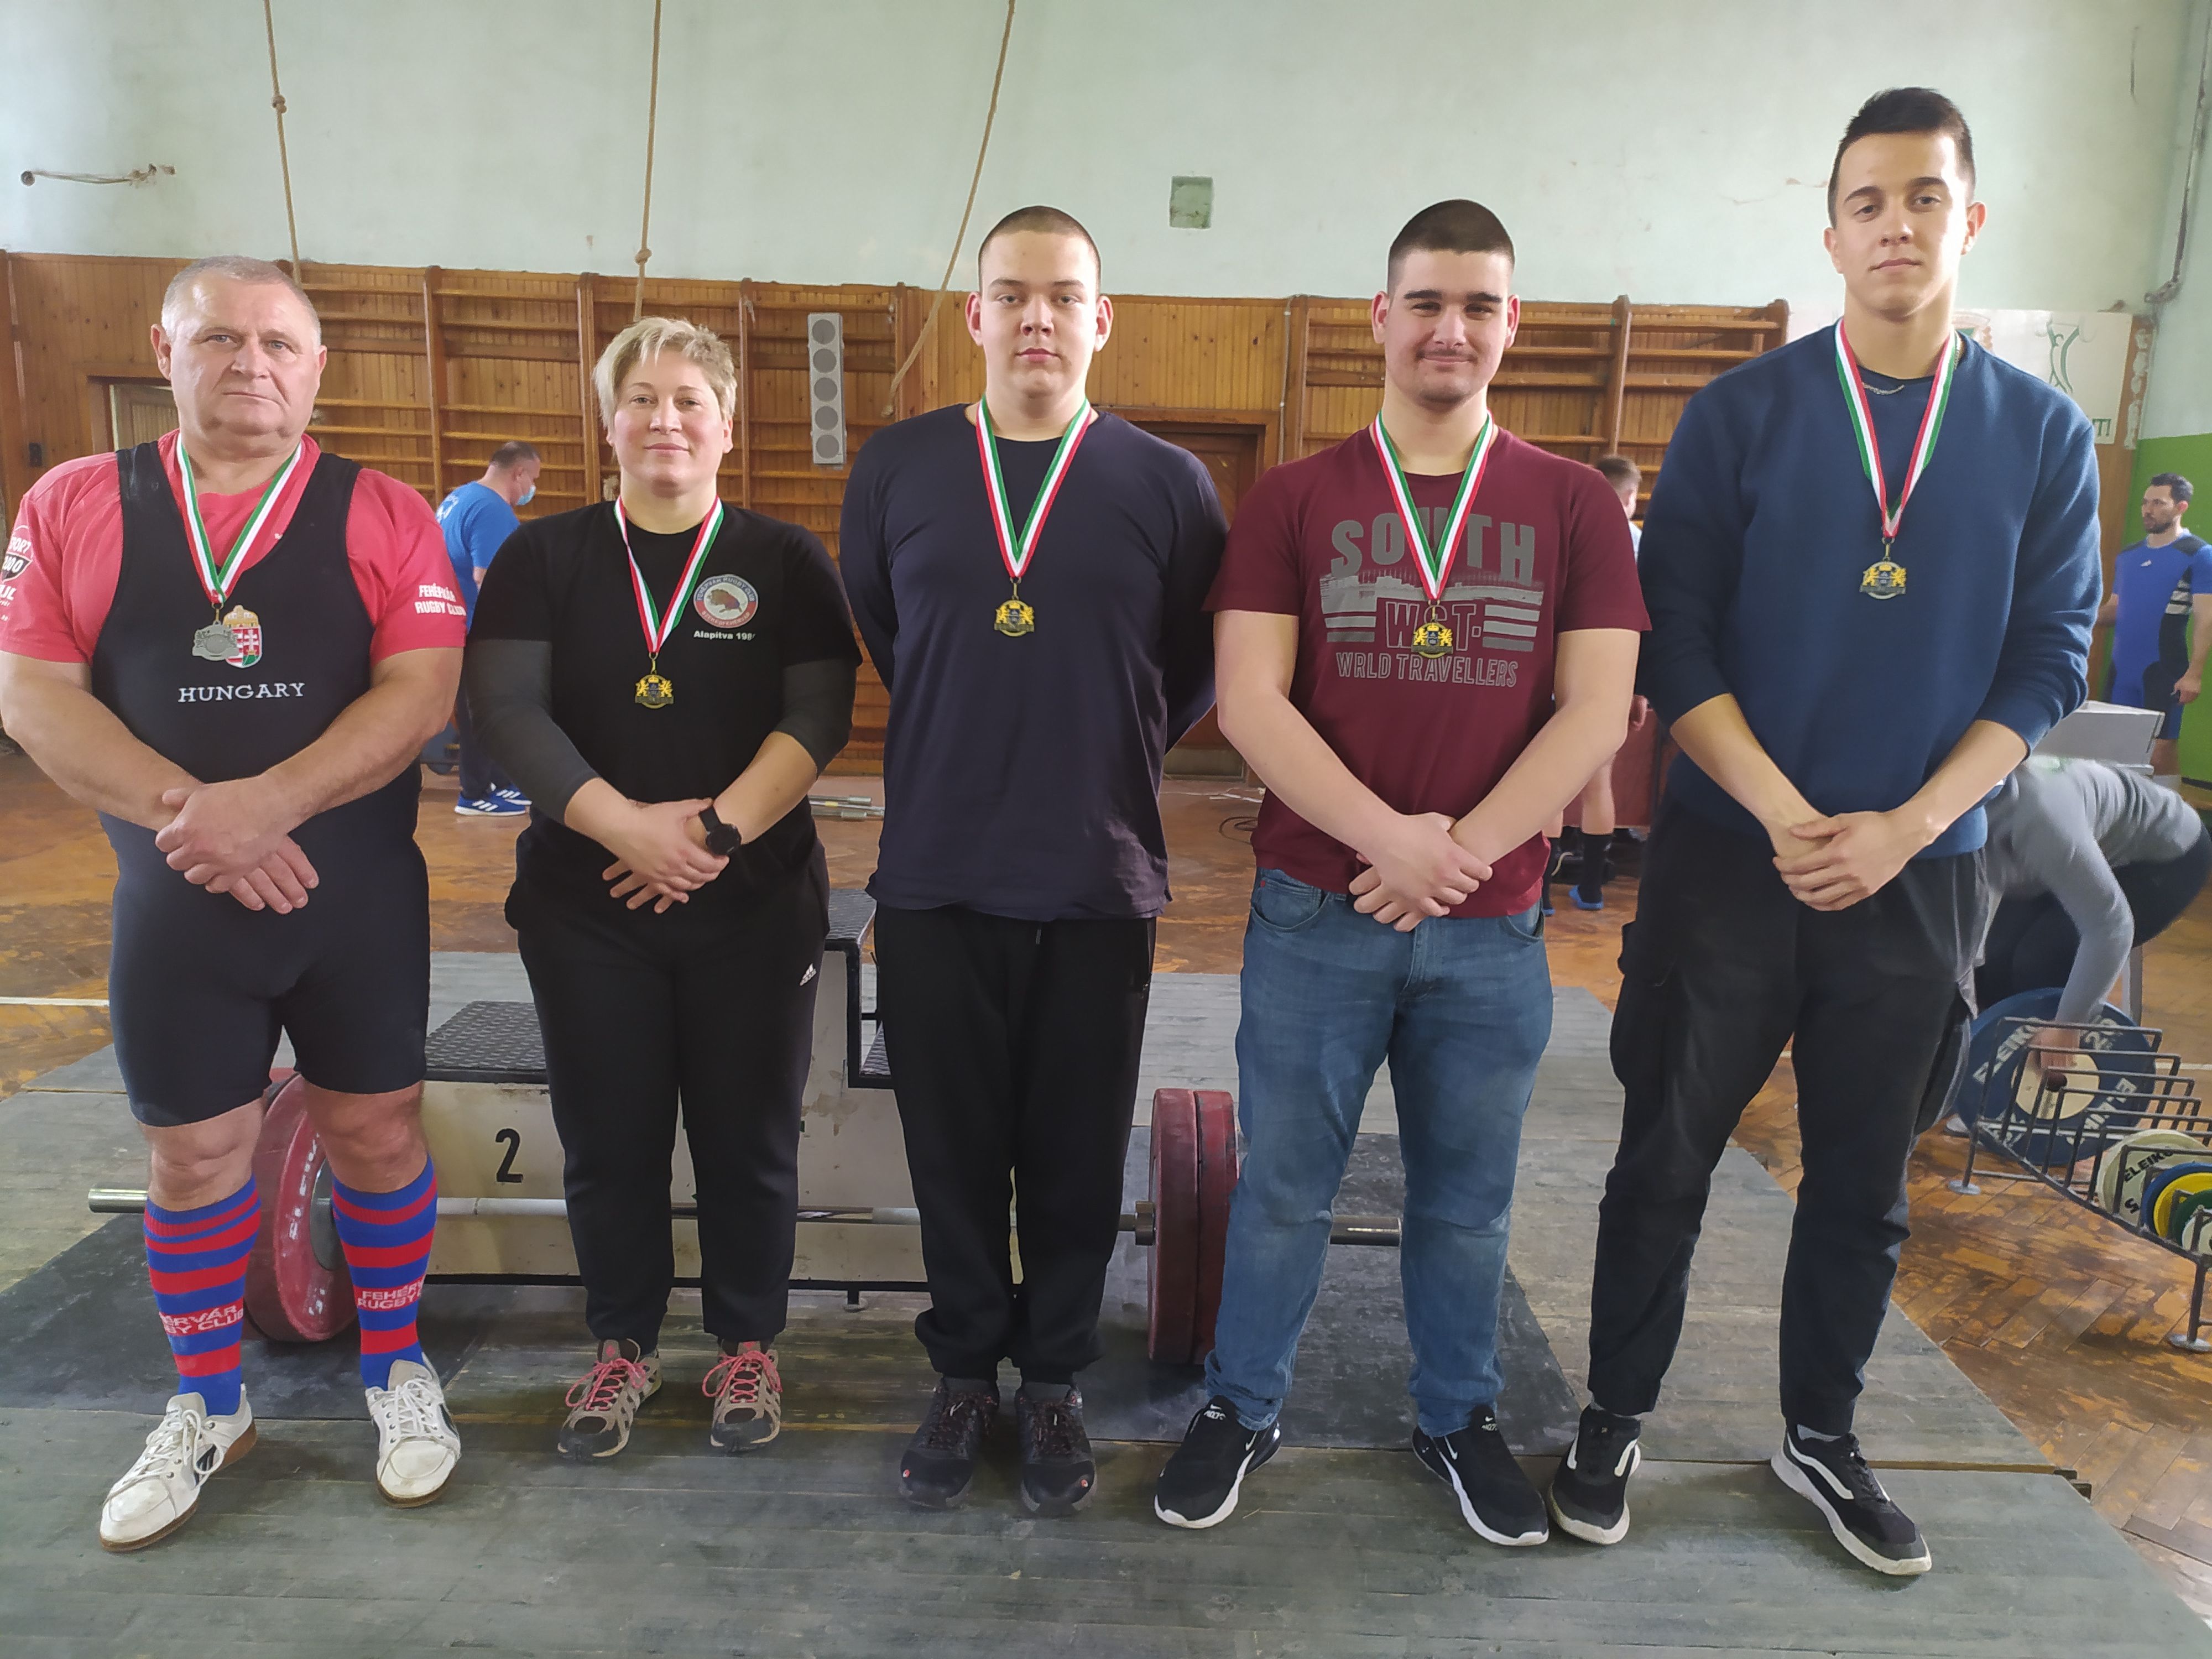 Súlyemelés - szép eredményeket hozott a Fehérvár Rugby Club Budapest bajnokságról